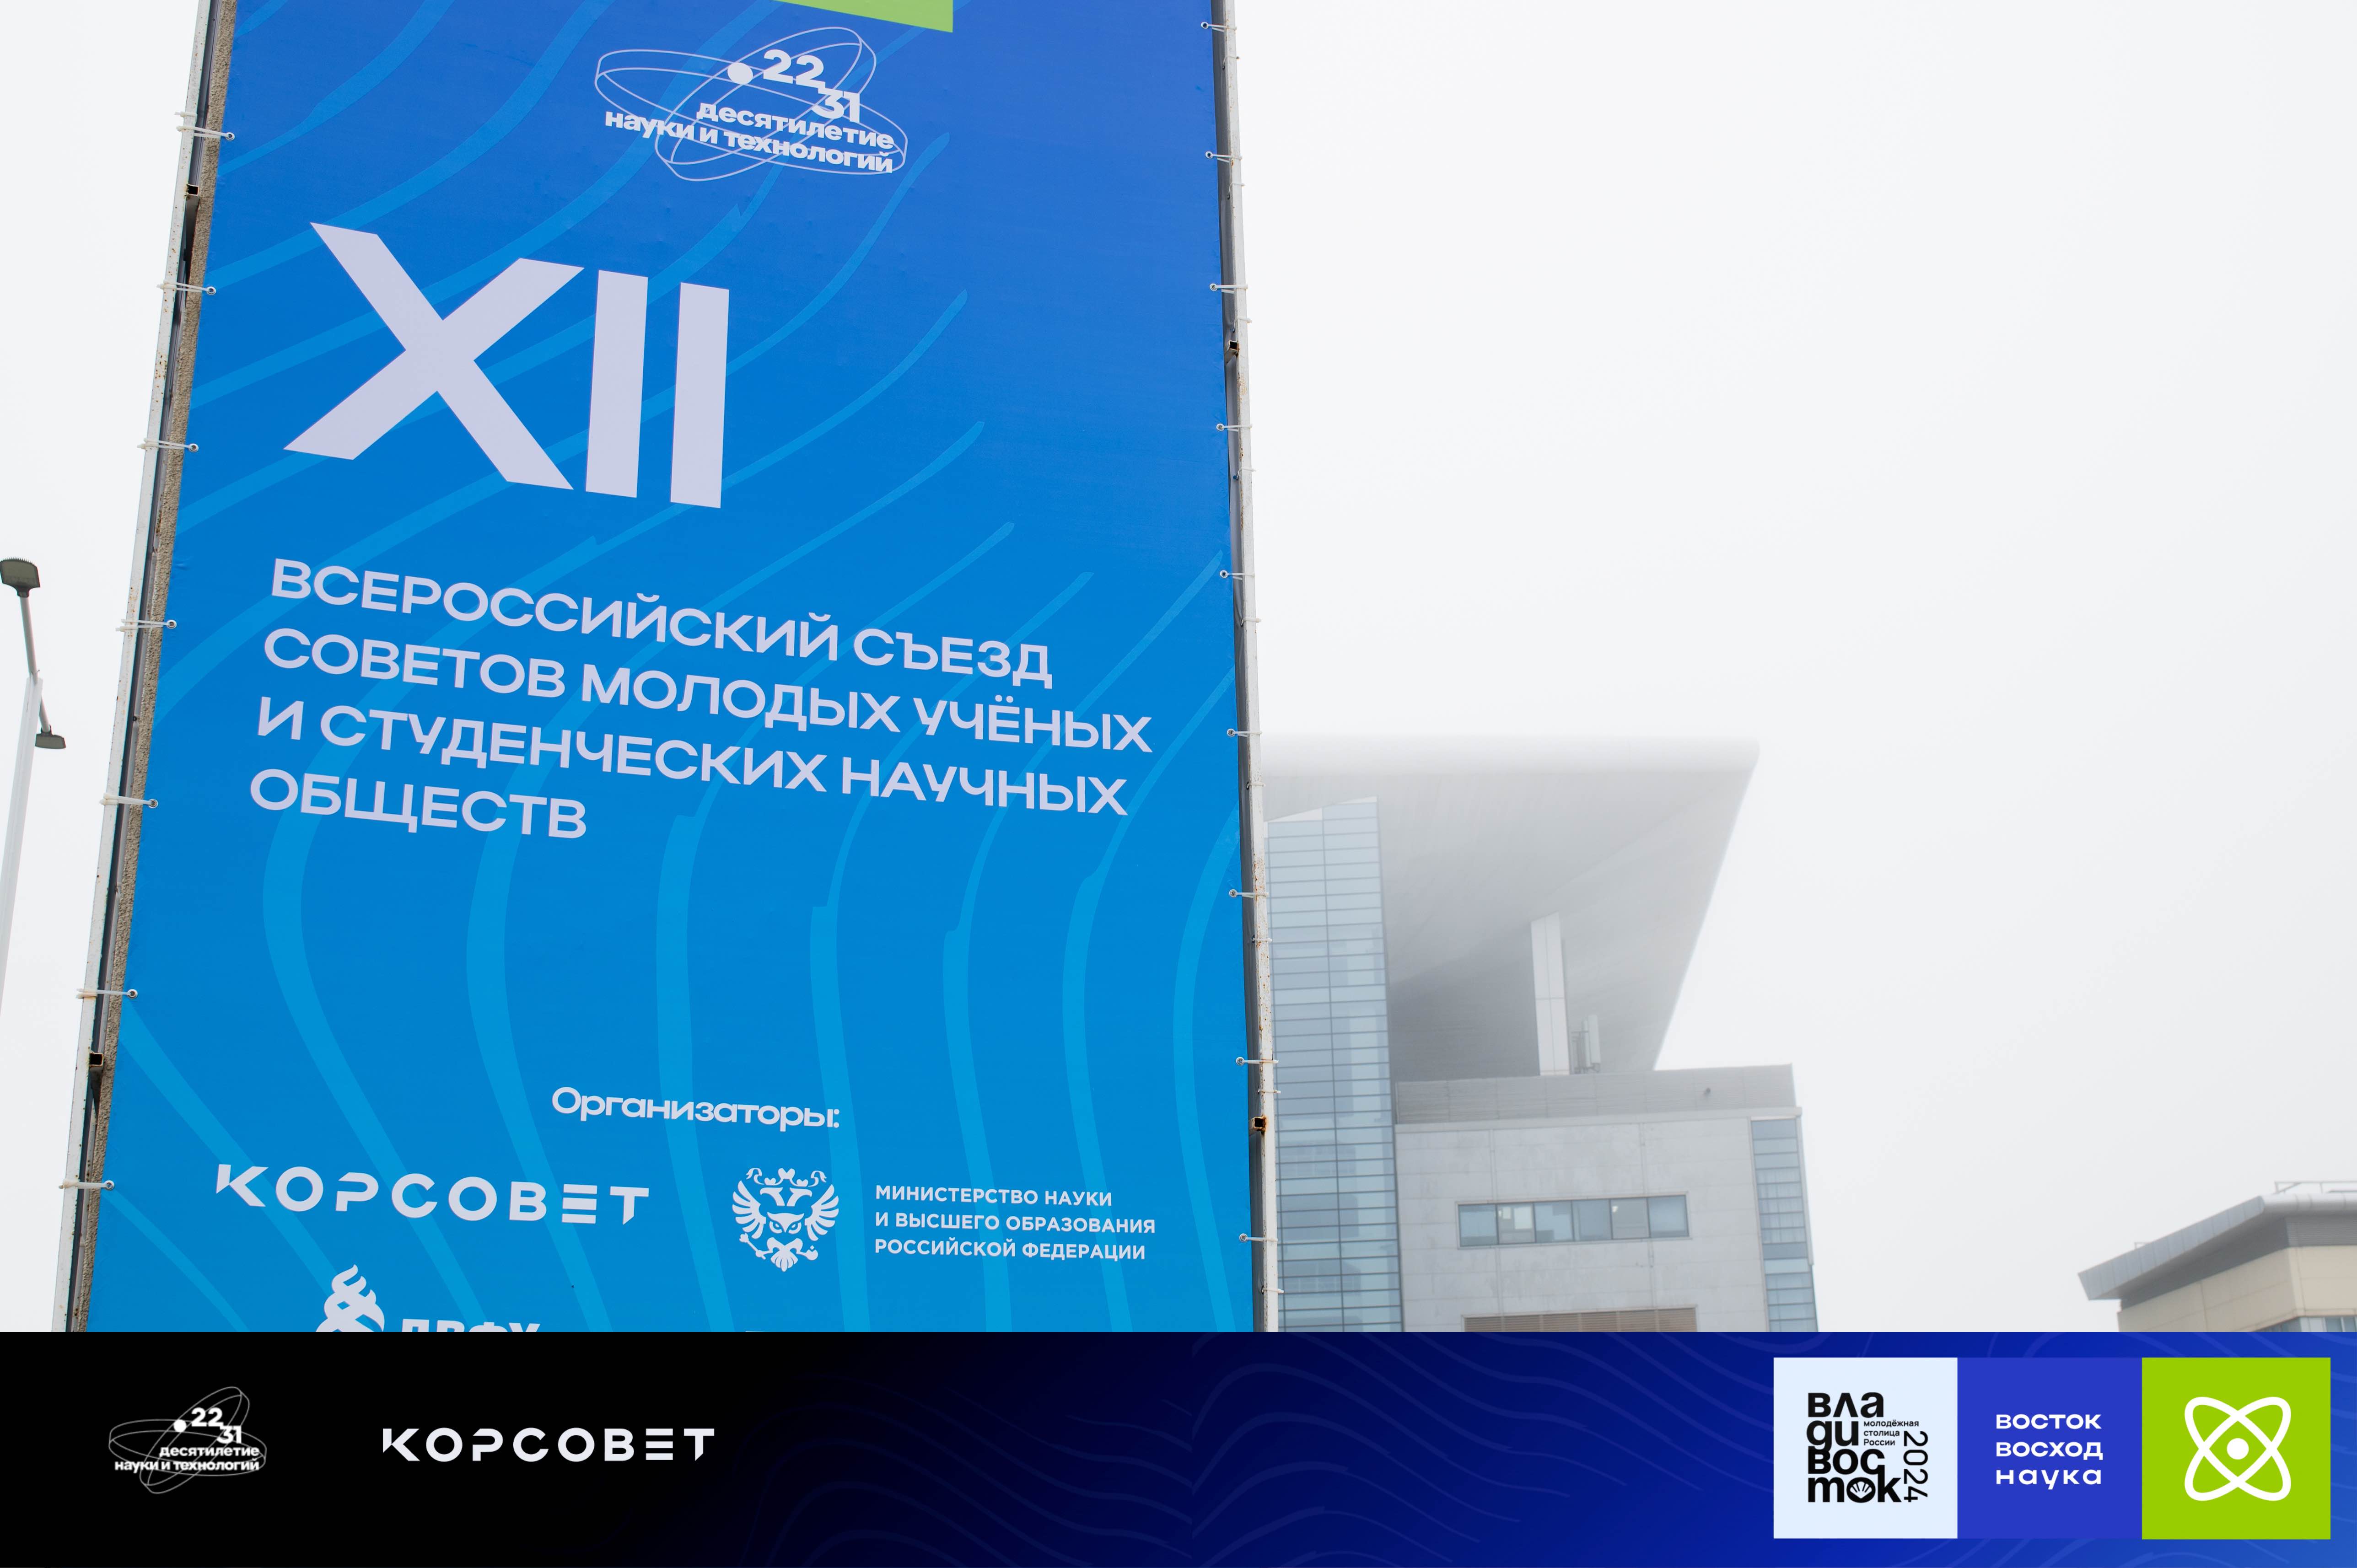 Участие в XII Всероссийском съезде Советов молодых учёных и студенческих научных обществ